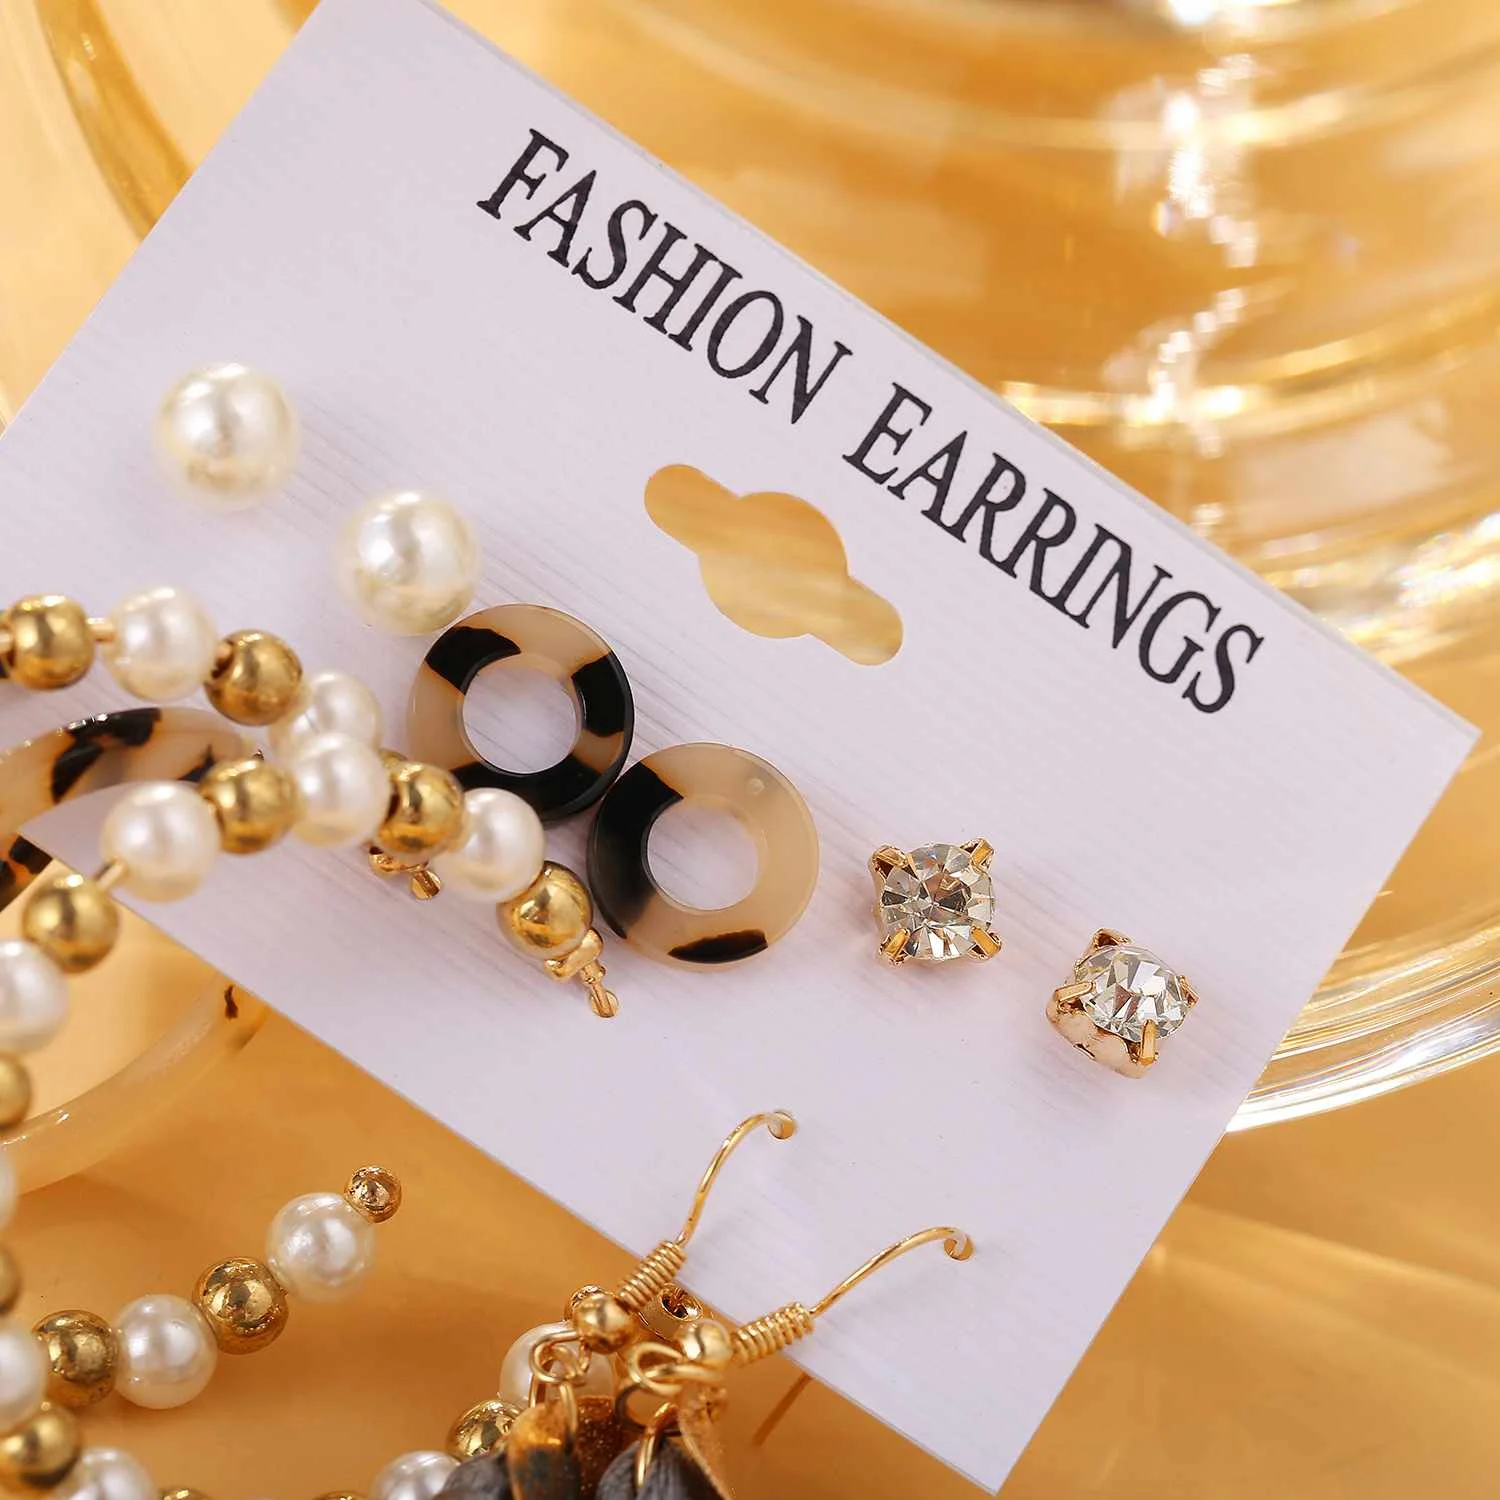 Hot Fashion Mixed Designs Earrings Set Acrylic Tassel Stud Earrings for Women Jewelry